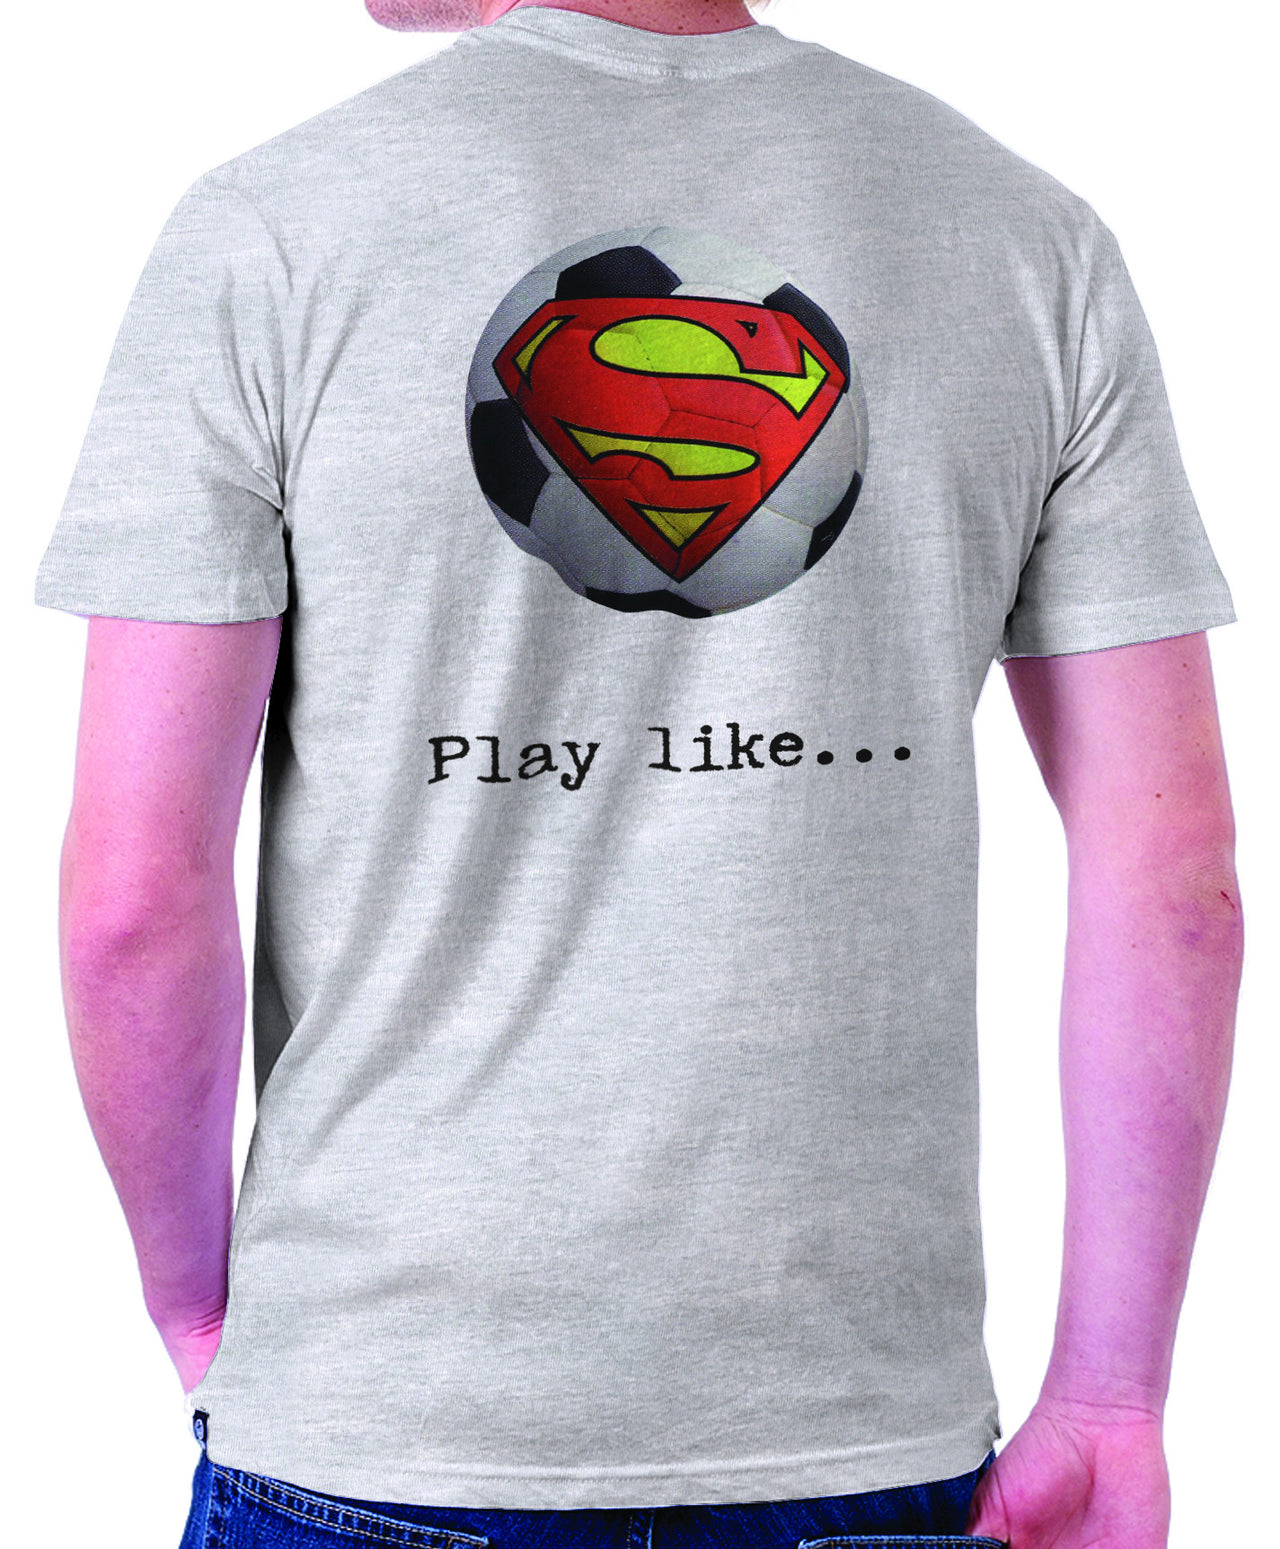 Superman 'Play like': Soccer Logo on Ash Grey Colored Pocket Tshirt - TshirtNow.net - 1